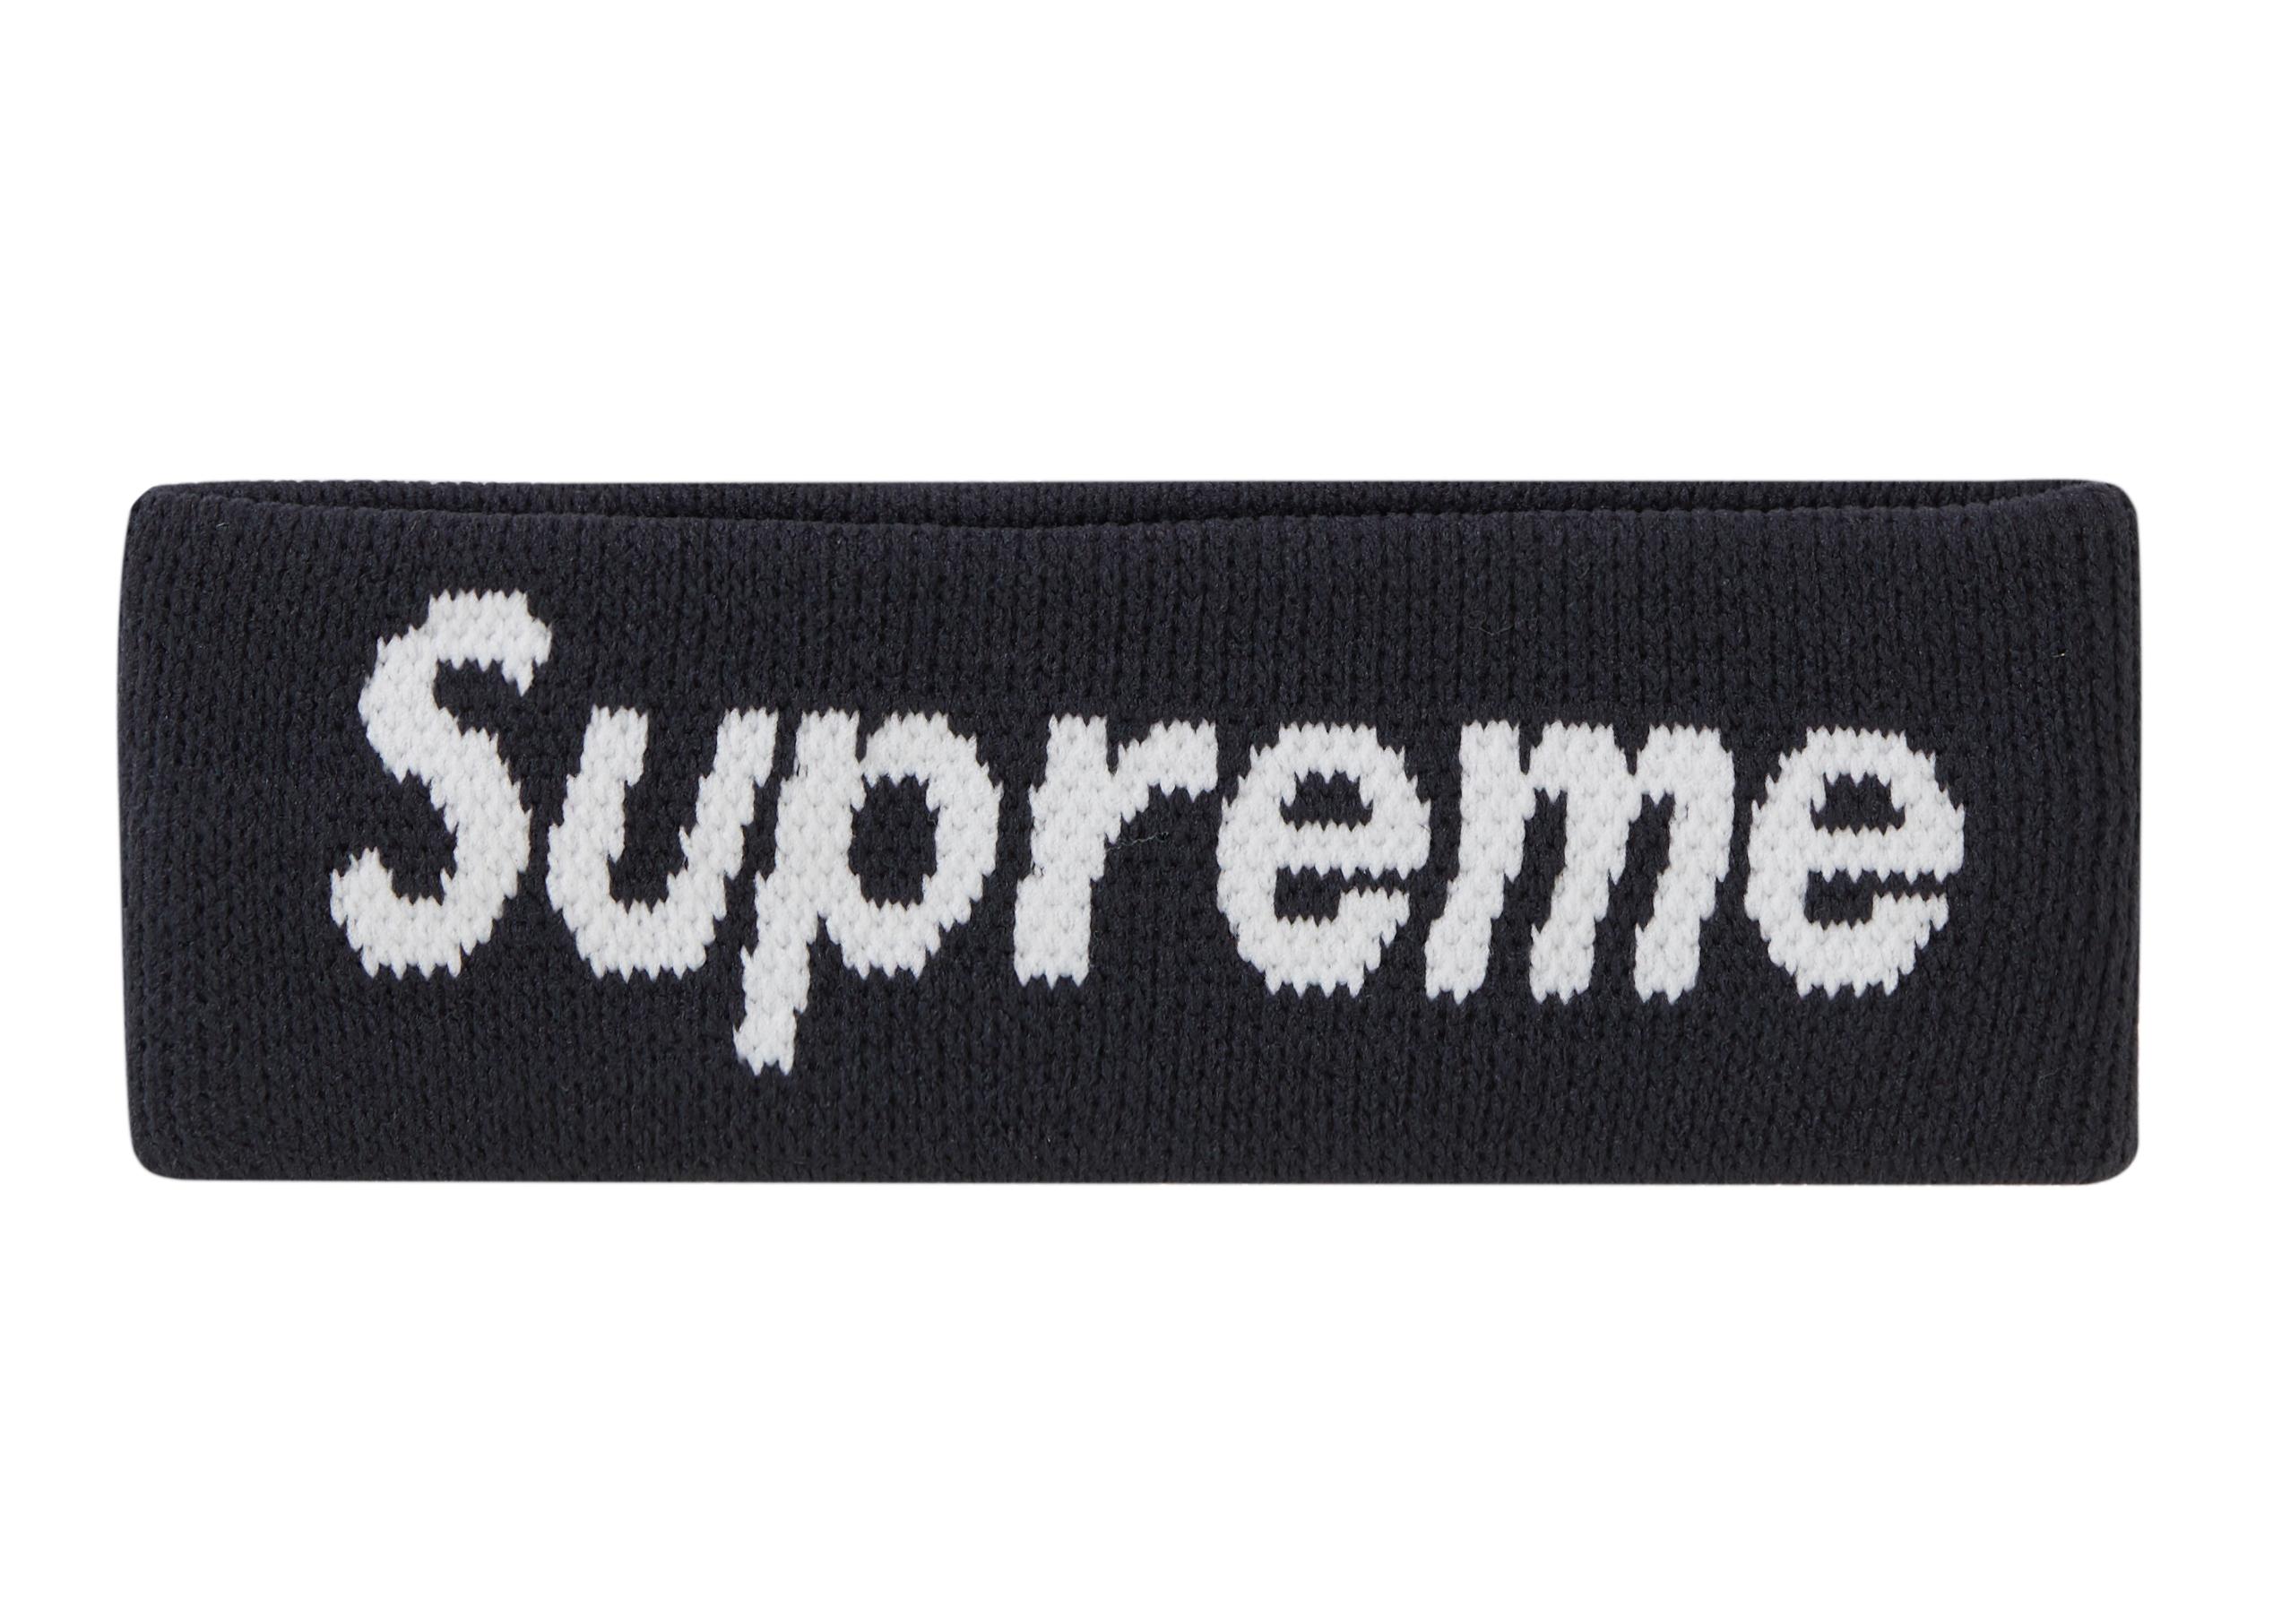 Supreme Nike Nba Headband in Black - Lyst